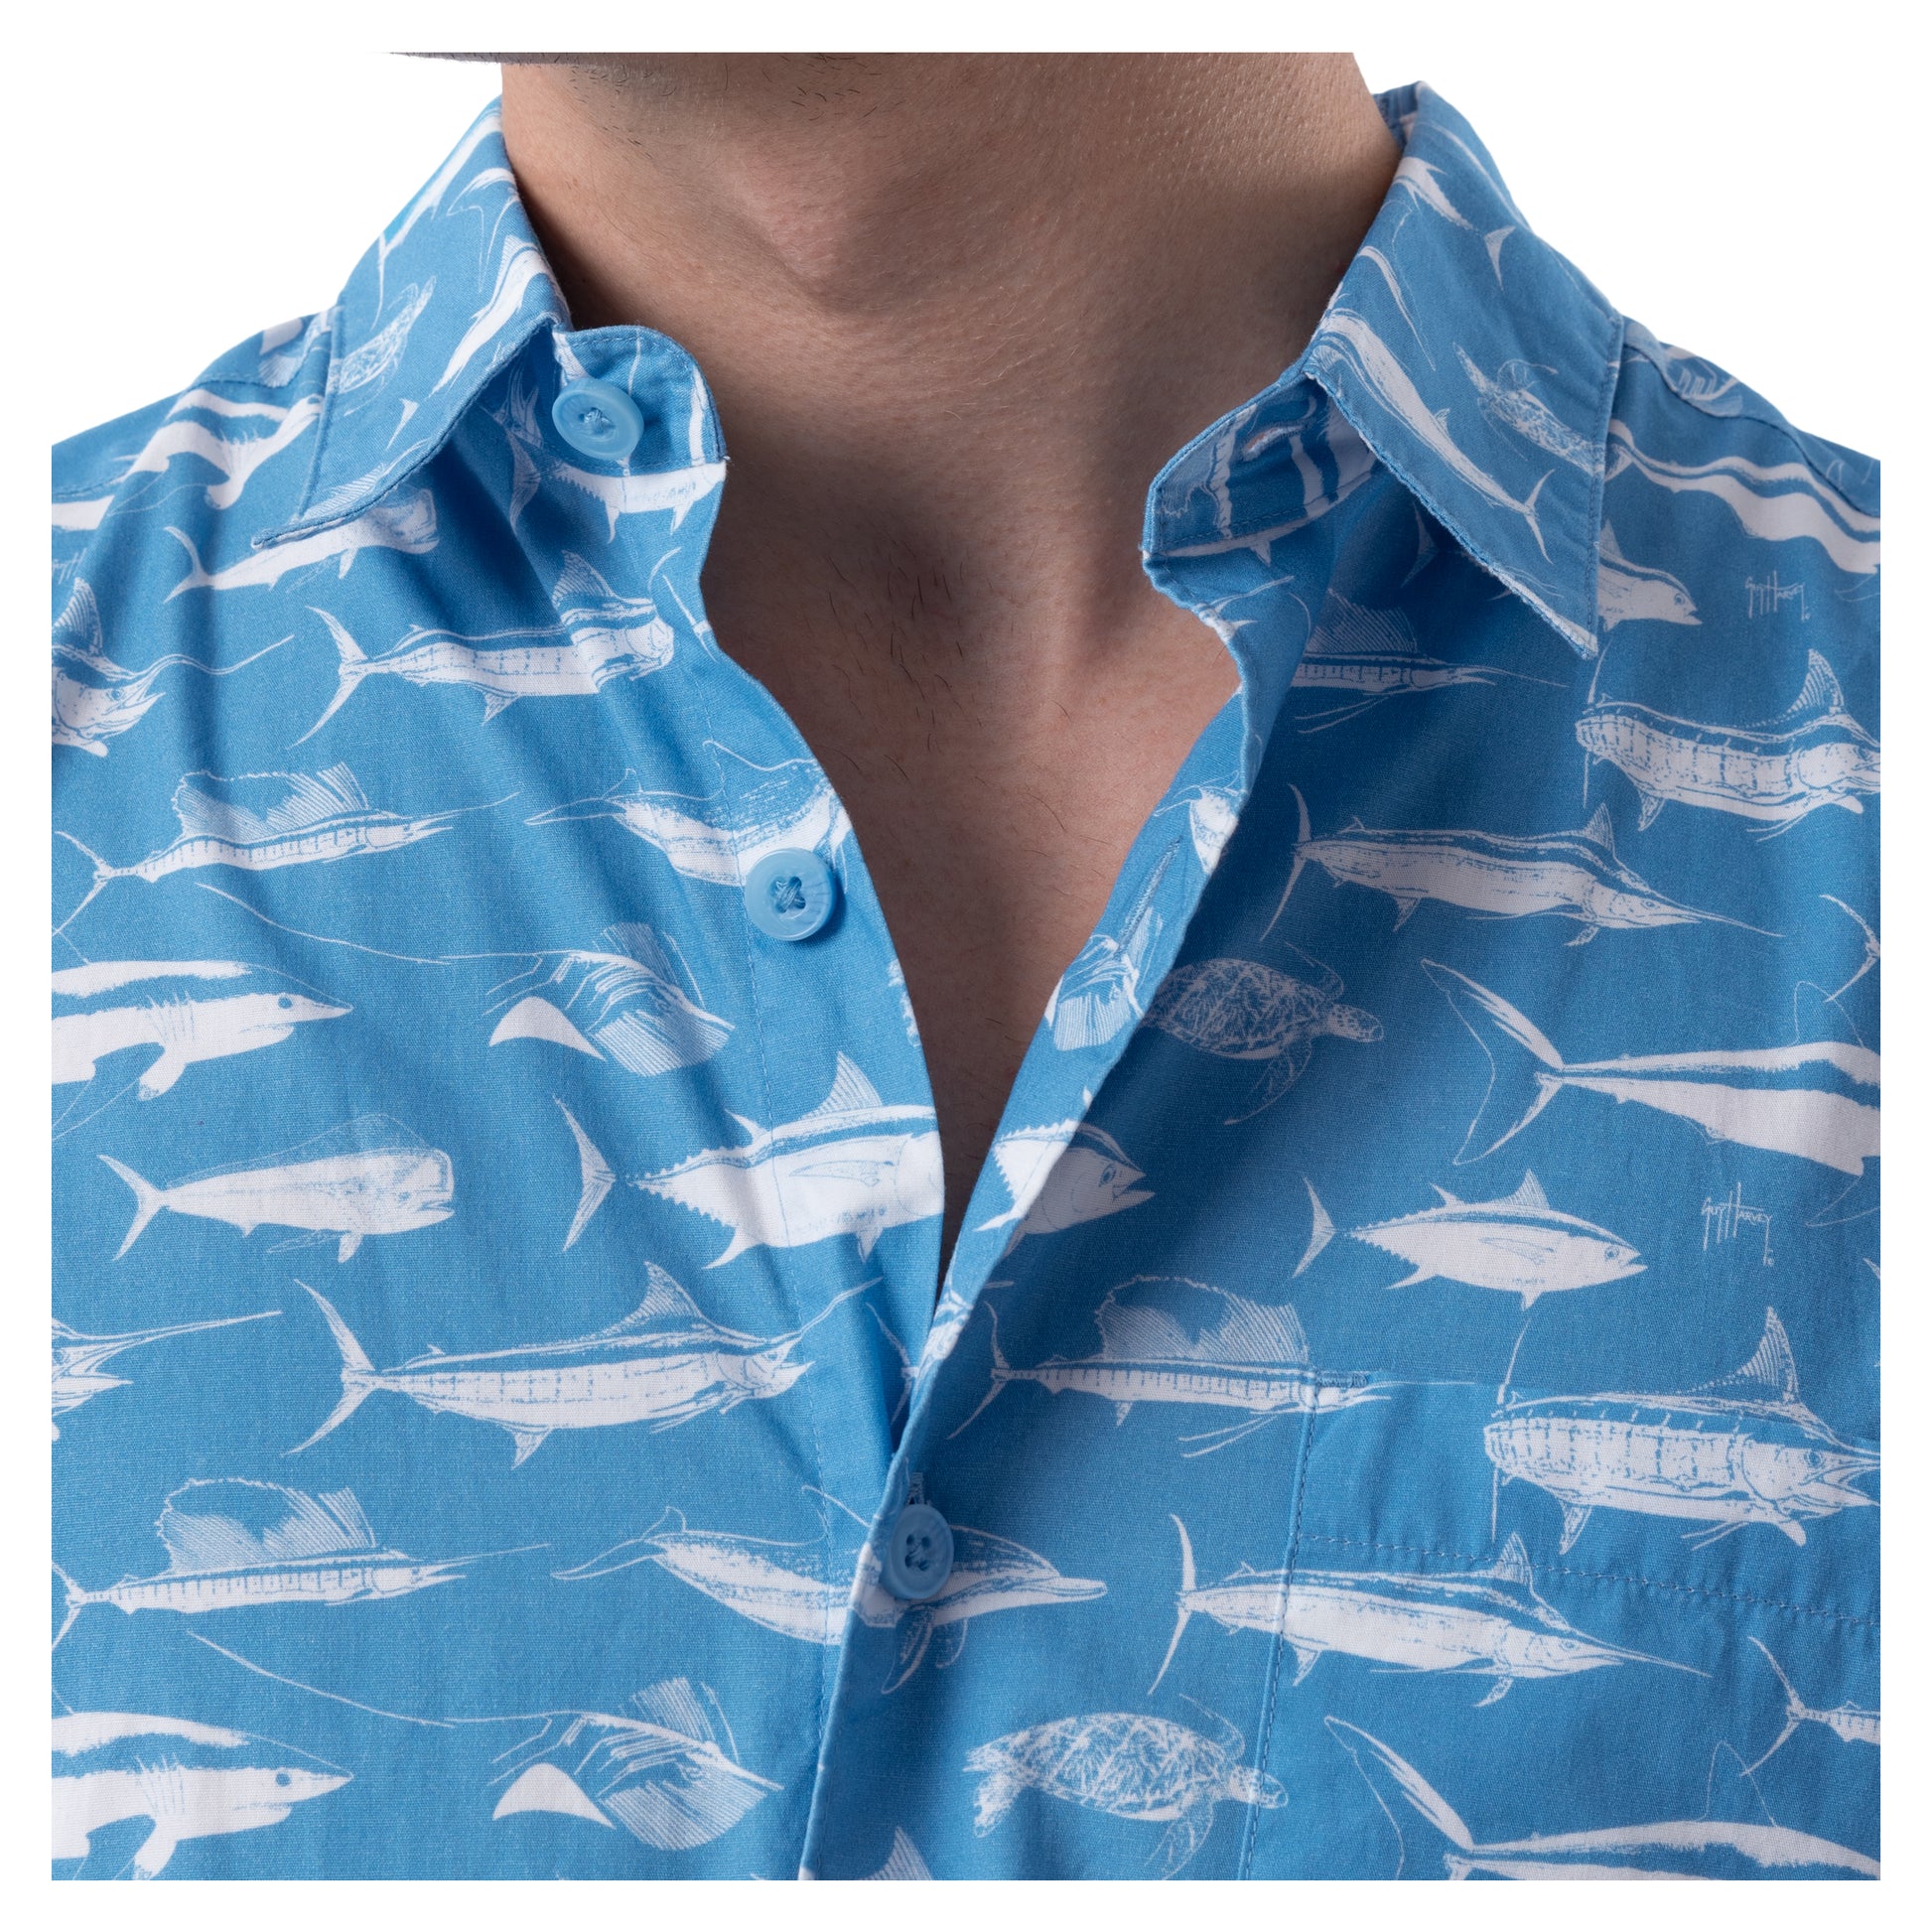 GUY HARVEY FISH CAMO MEN'S XL FISHING SHIRT - clothing